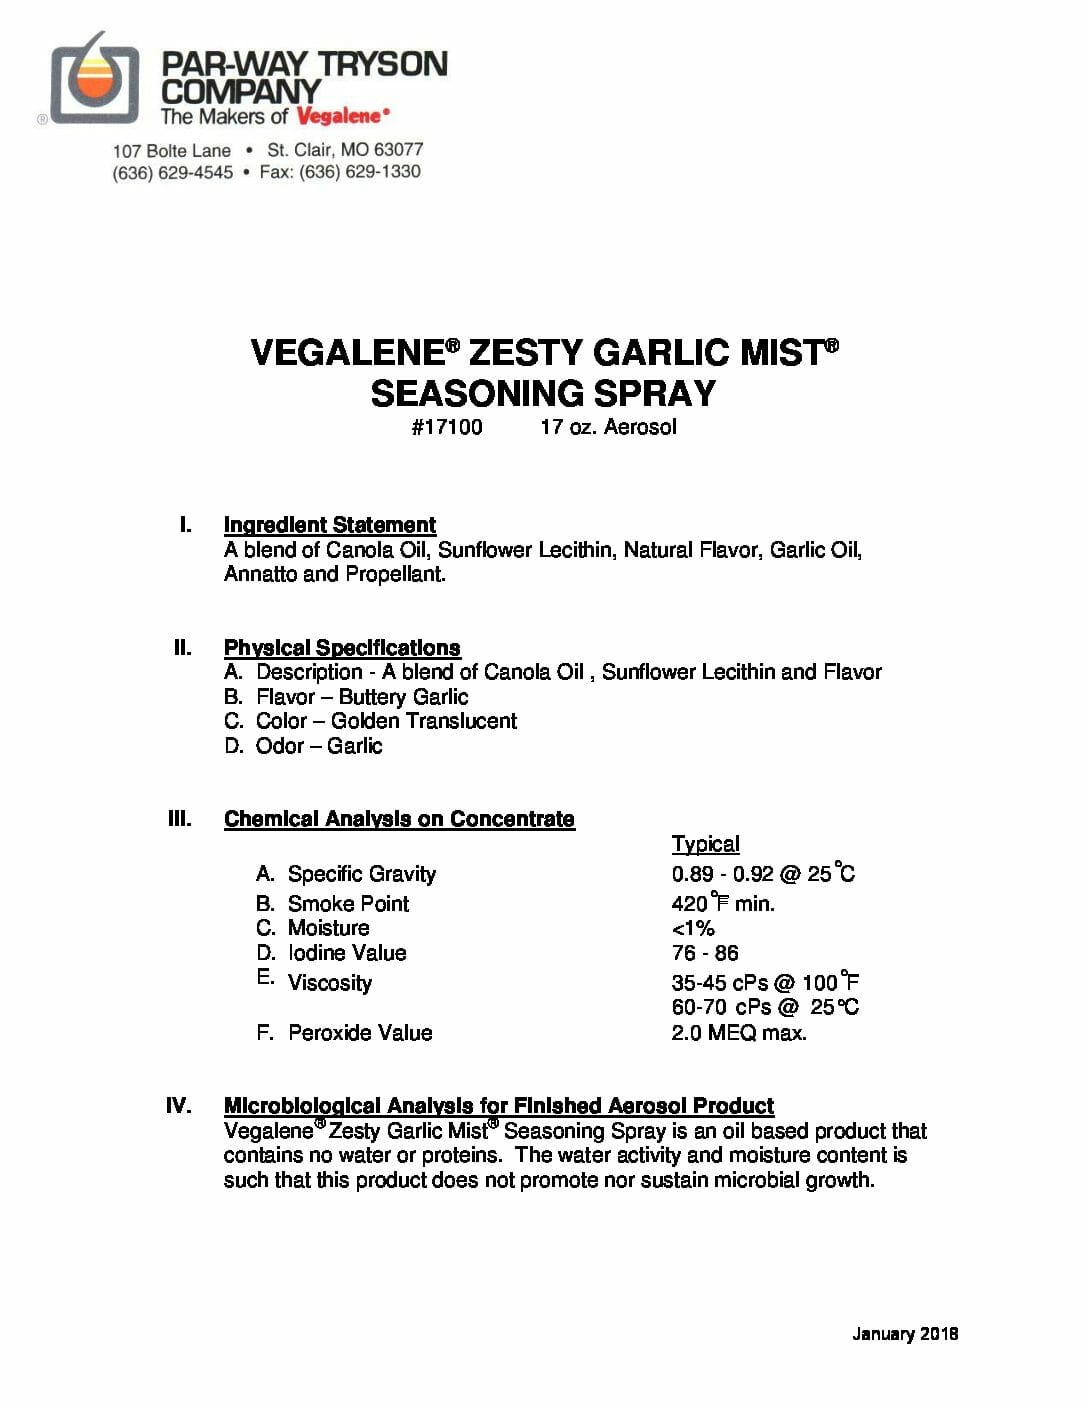 PDS – 17100 – Vegalene Zesty Garlic Mist Seasoning Spray